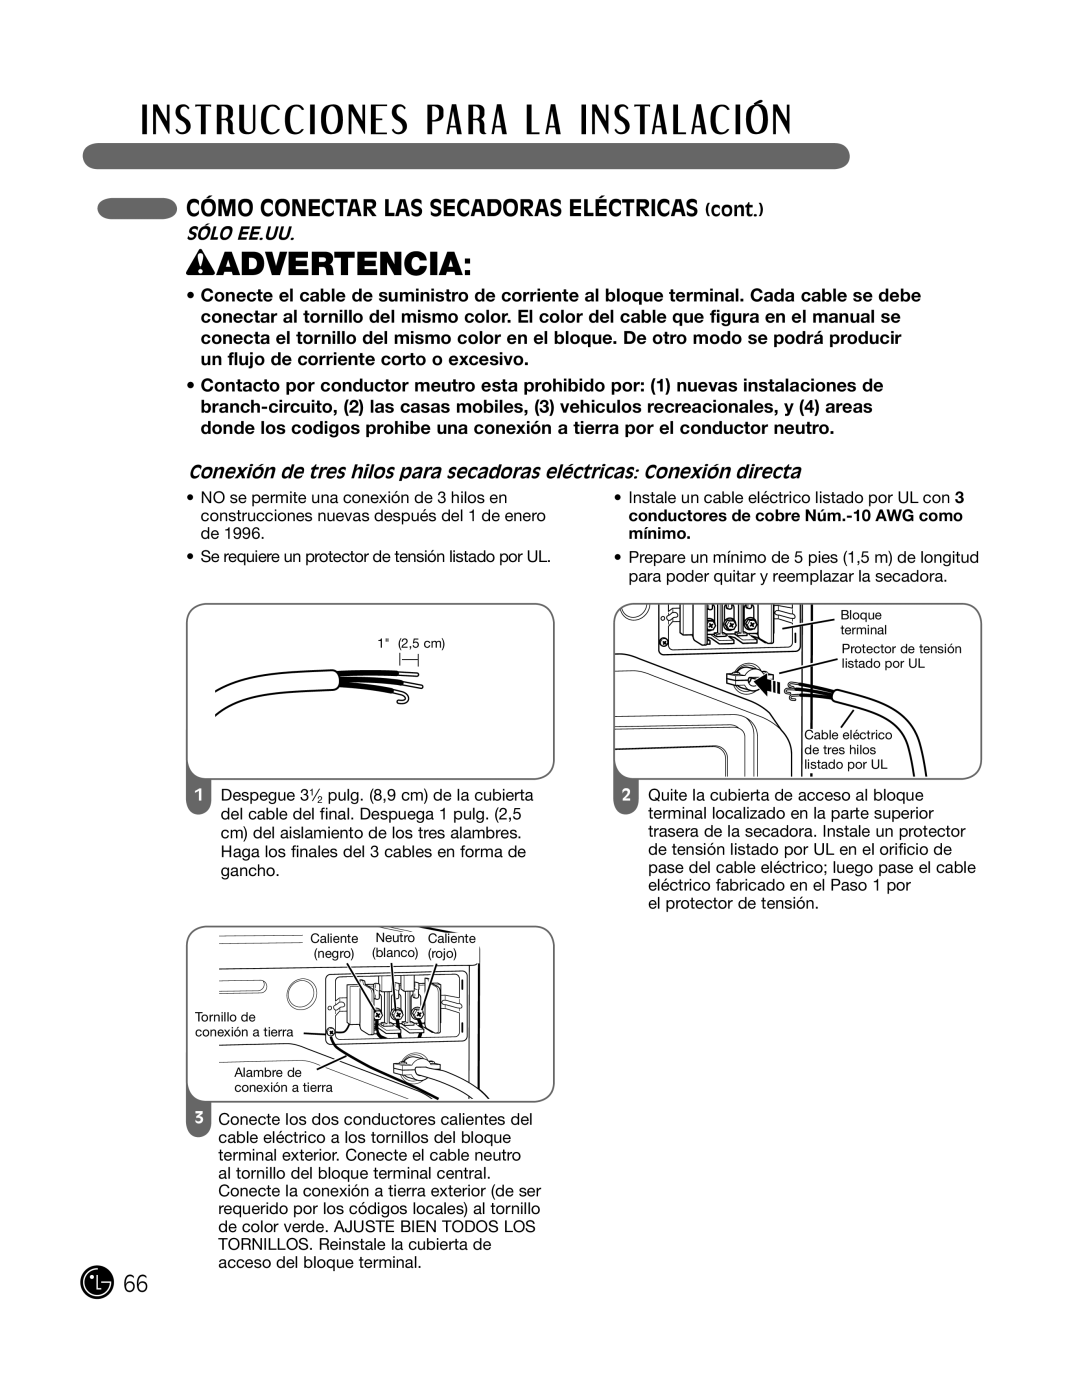 LG Electronics P154 manual conexión de tres hilos para secadoras eléctricas conexión directa, wADVERTENCIA, SÓlo ee.uu 